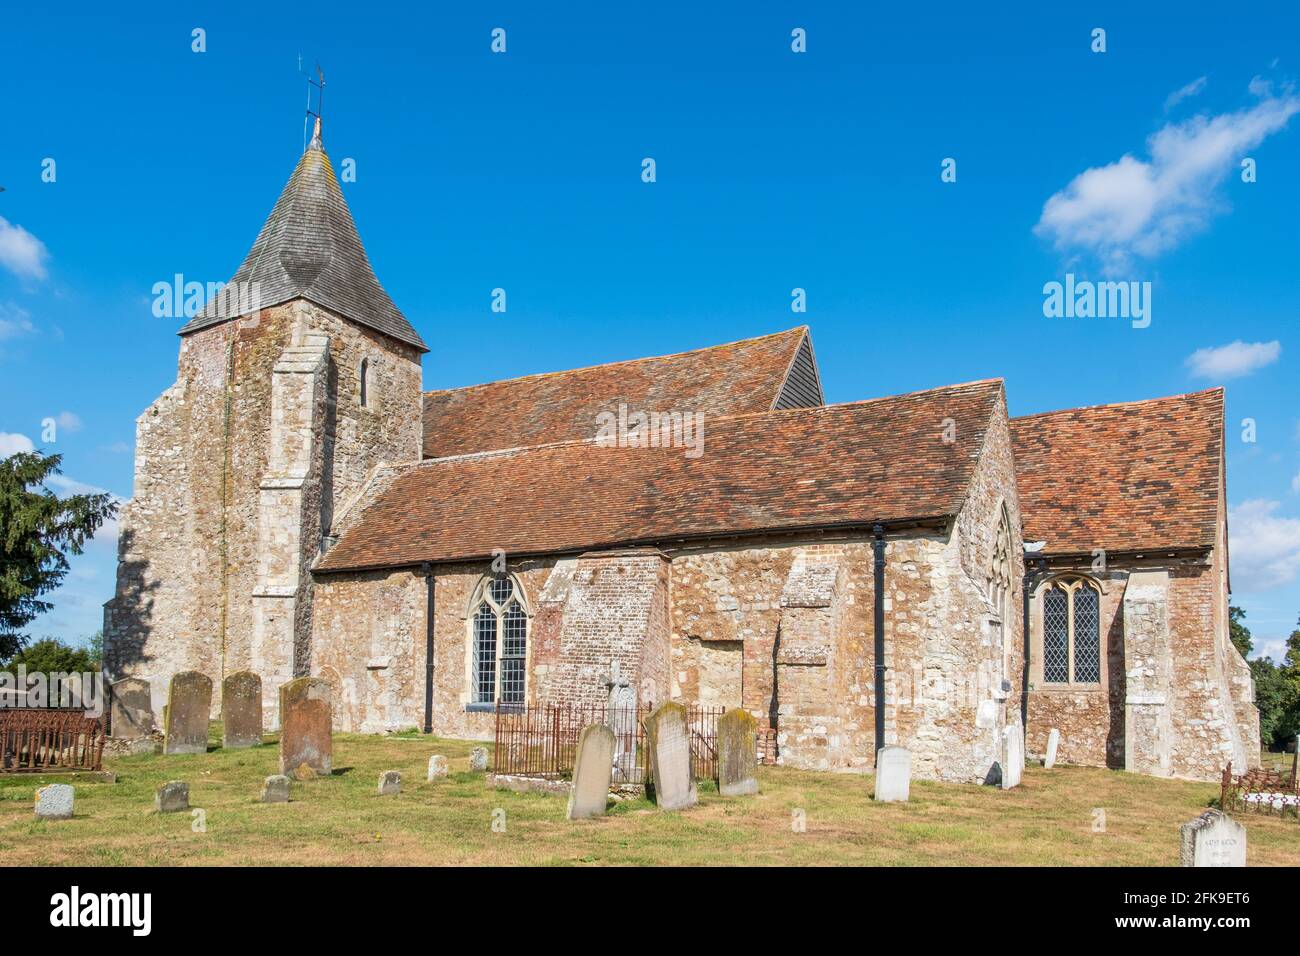 St Clement's Church, Old Romney, Romney Marsh, Kent, UK Stock Photo